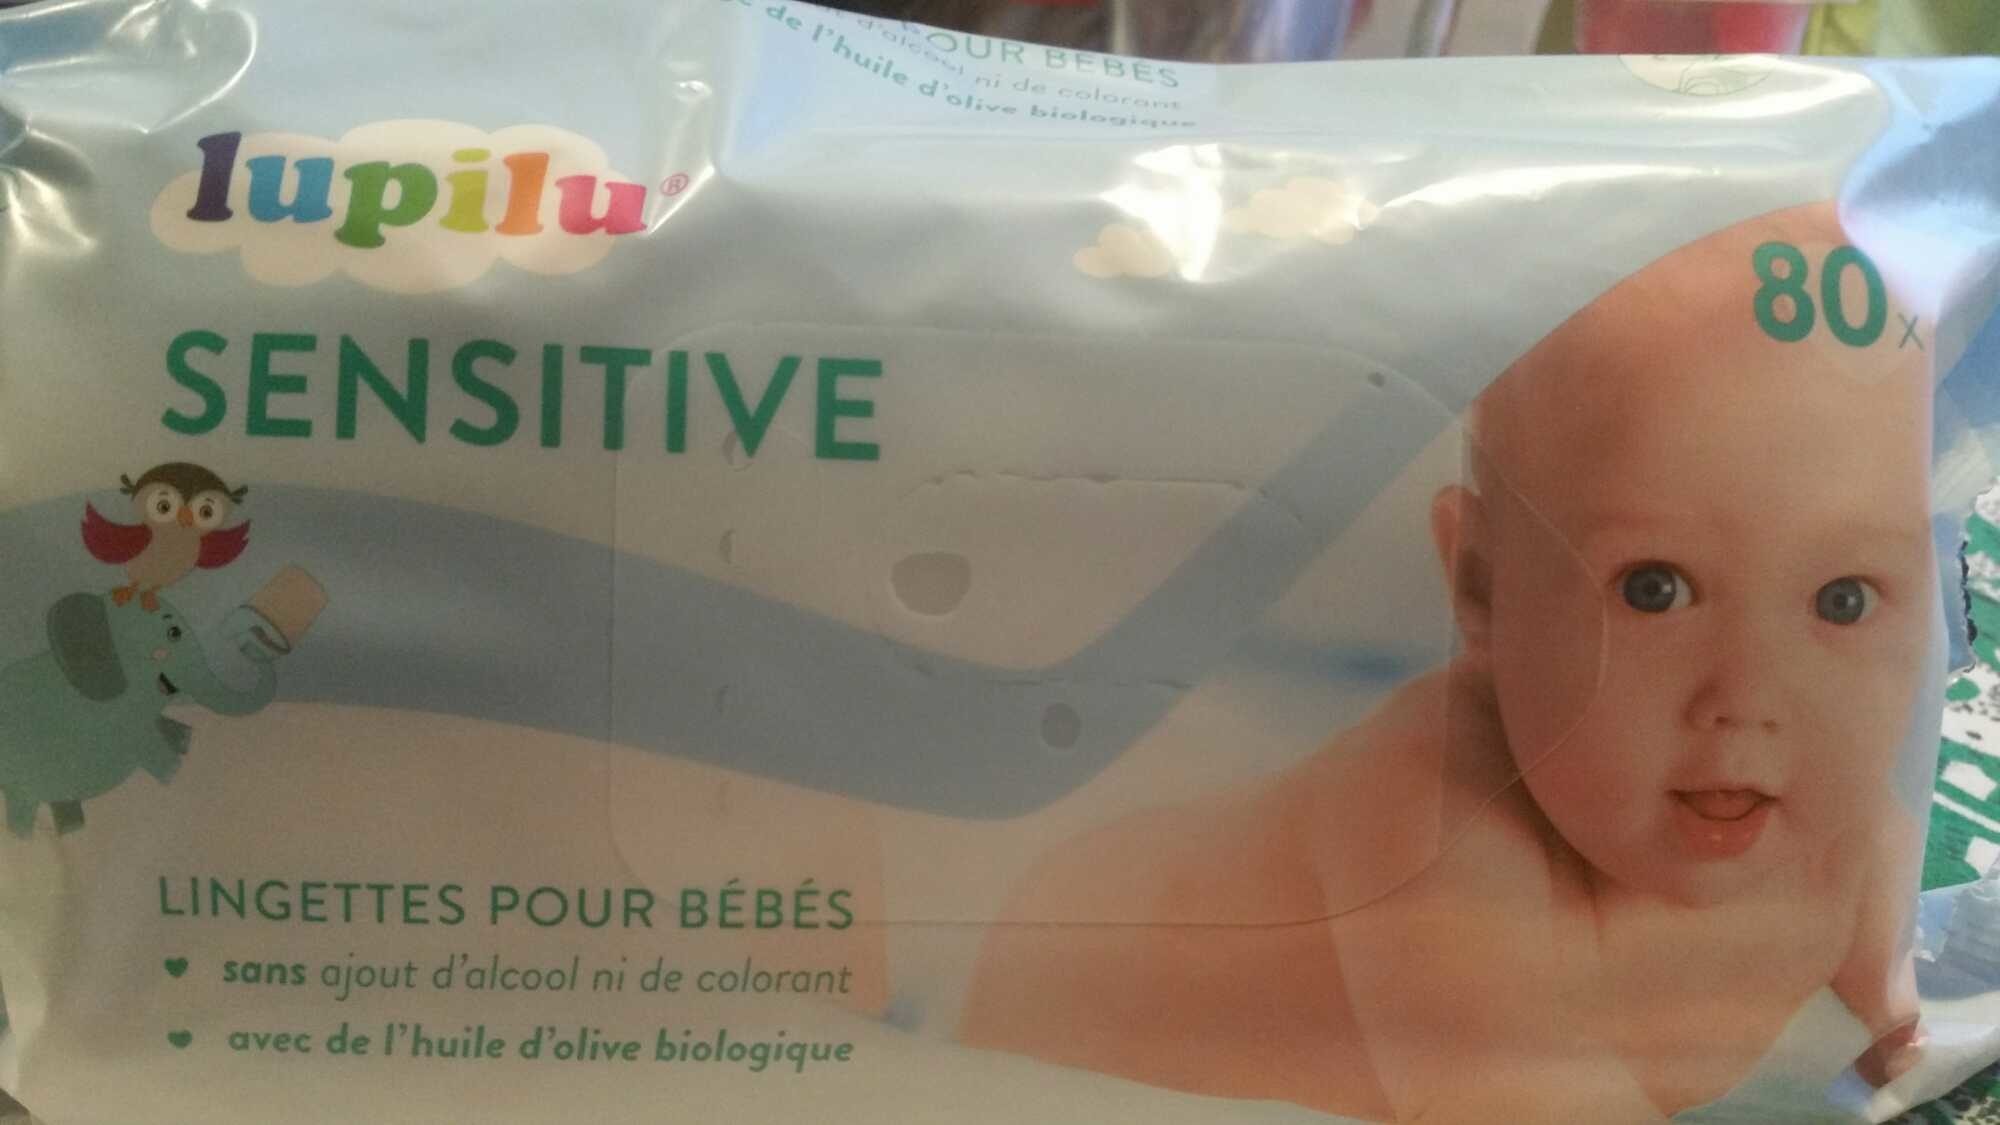 Lingettes bébé très douces sensitive - Chérubin - 80